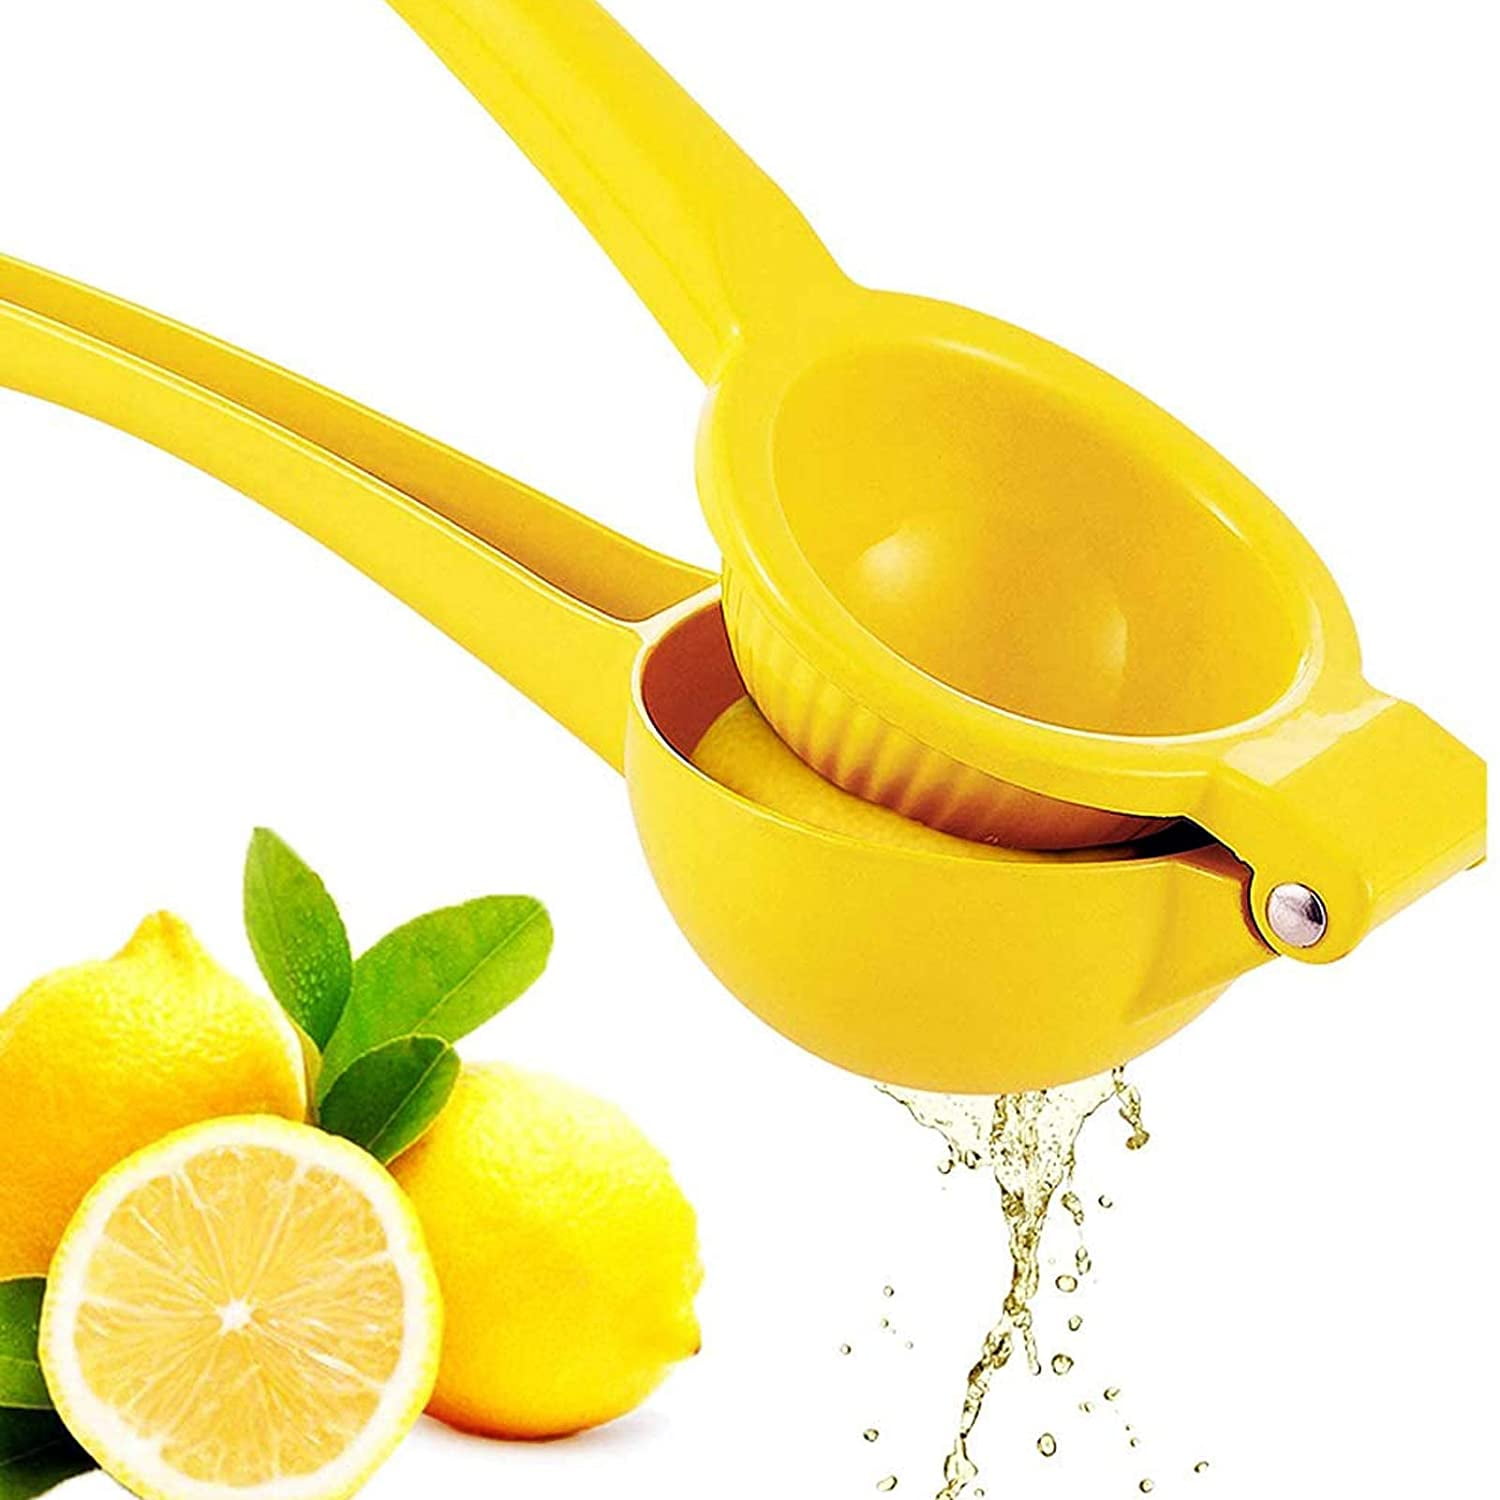 Watermelon Lemon Squeezer Hand Manual Citrus Press Juicer Squeezer Handheld Lemon Juicer Premium Stainless Steel Squeezer for Oranges,Lemons,Citrus 